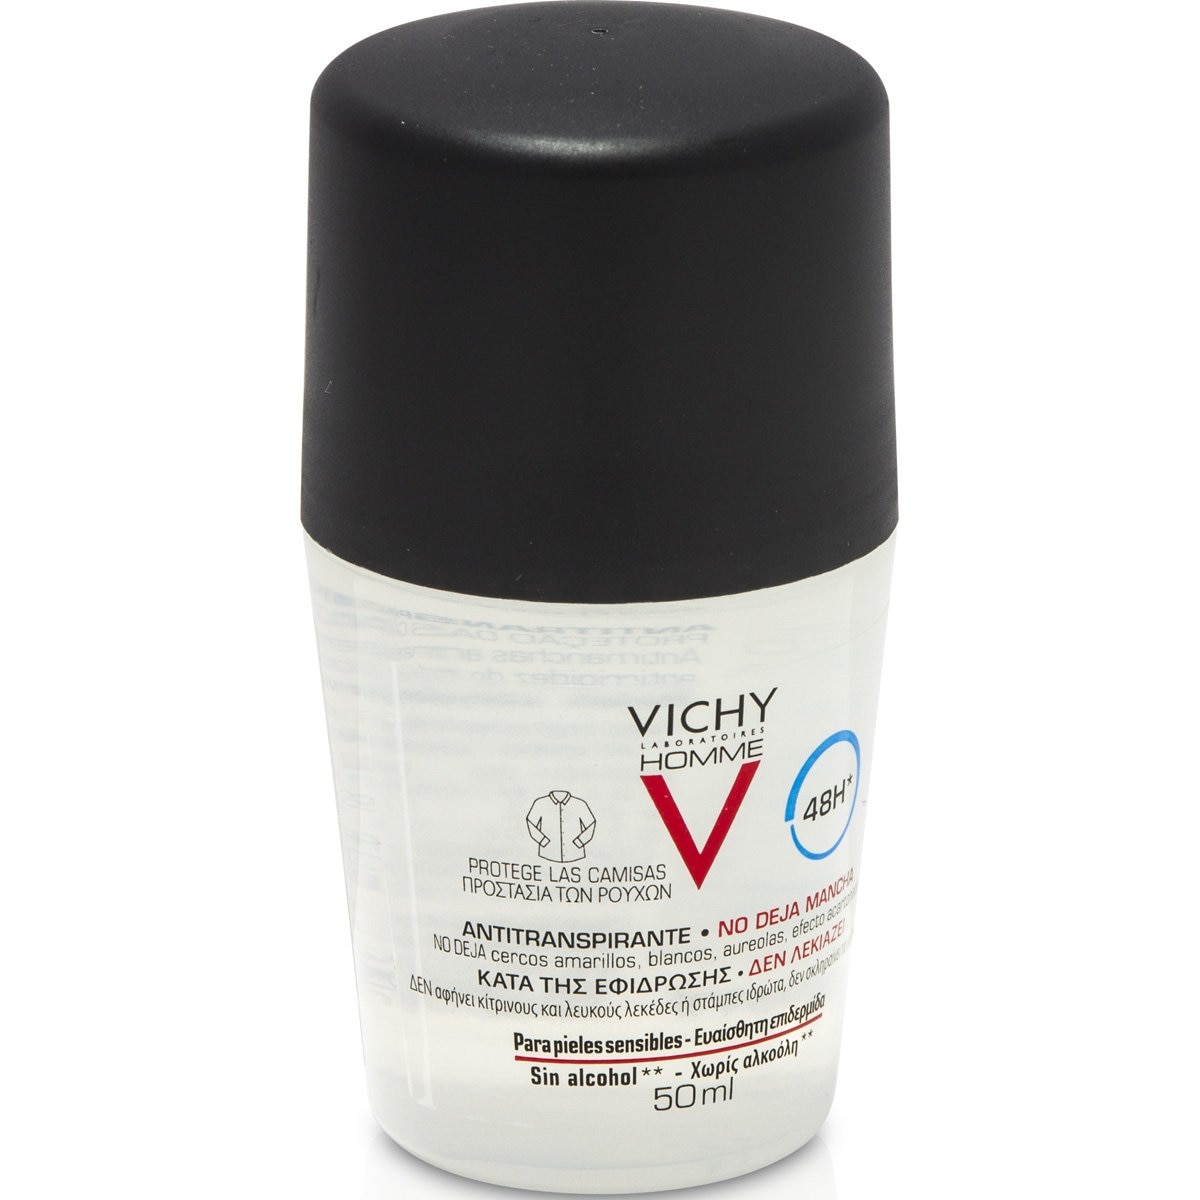 Vichy Homme Desodorante Antitranspirante, Antimanchas en Roll-On